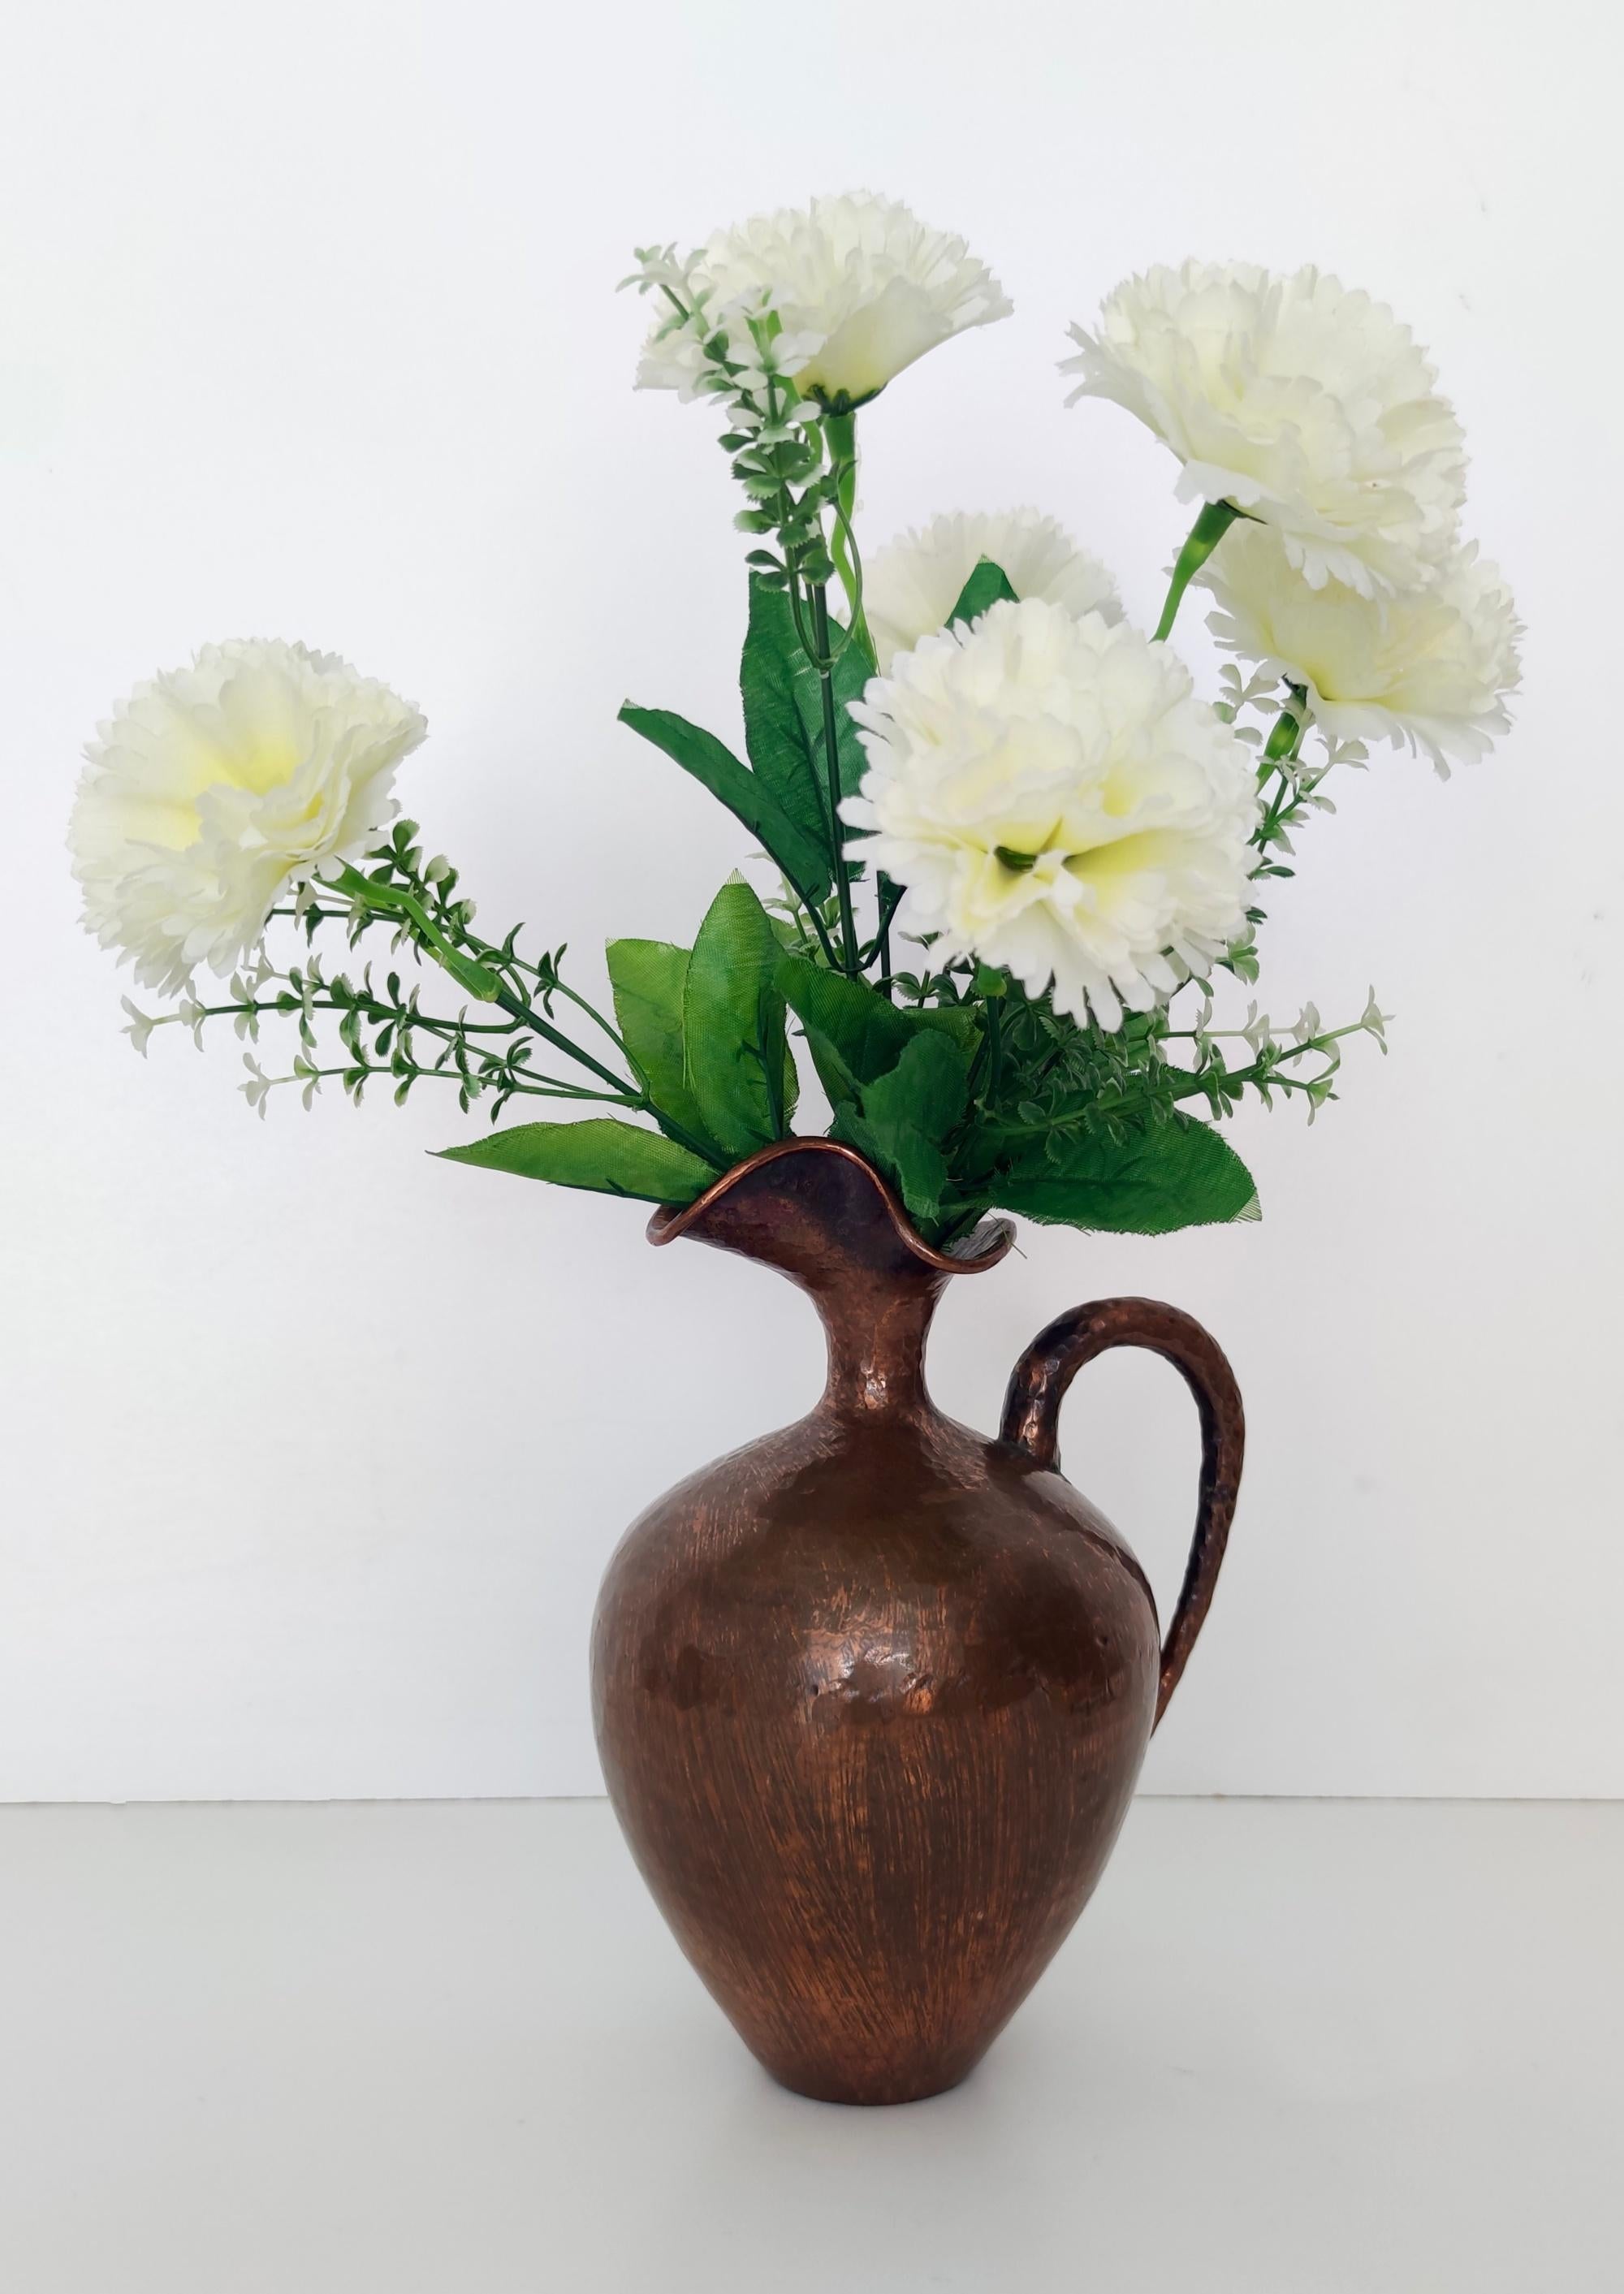 Fabriqué en Italie, années 1950.
Ce vase-pichet est fabriqué en cuivre repoussé. 
Il est minimal et classique, mais reste moderne. Son design incarne parfaitement l'esprit de l'époque. 
Il s'agit d'une pièce vintage, elle peut donc présenter de